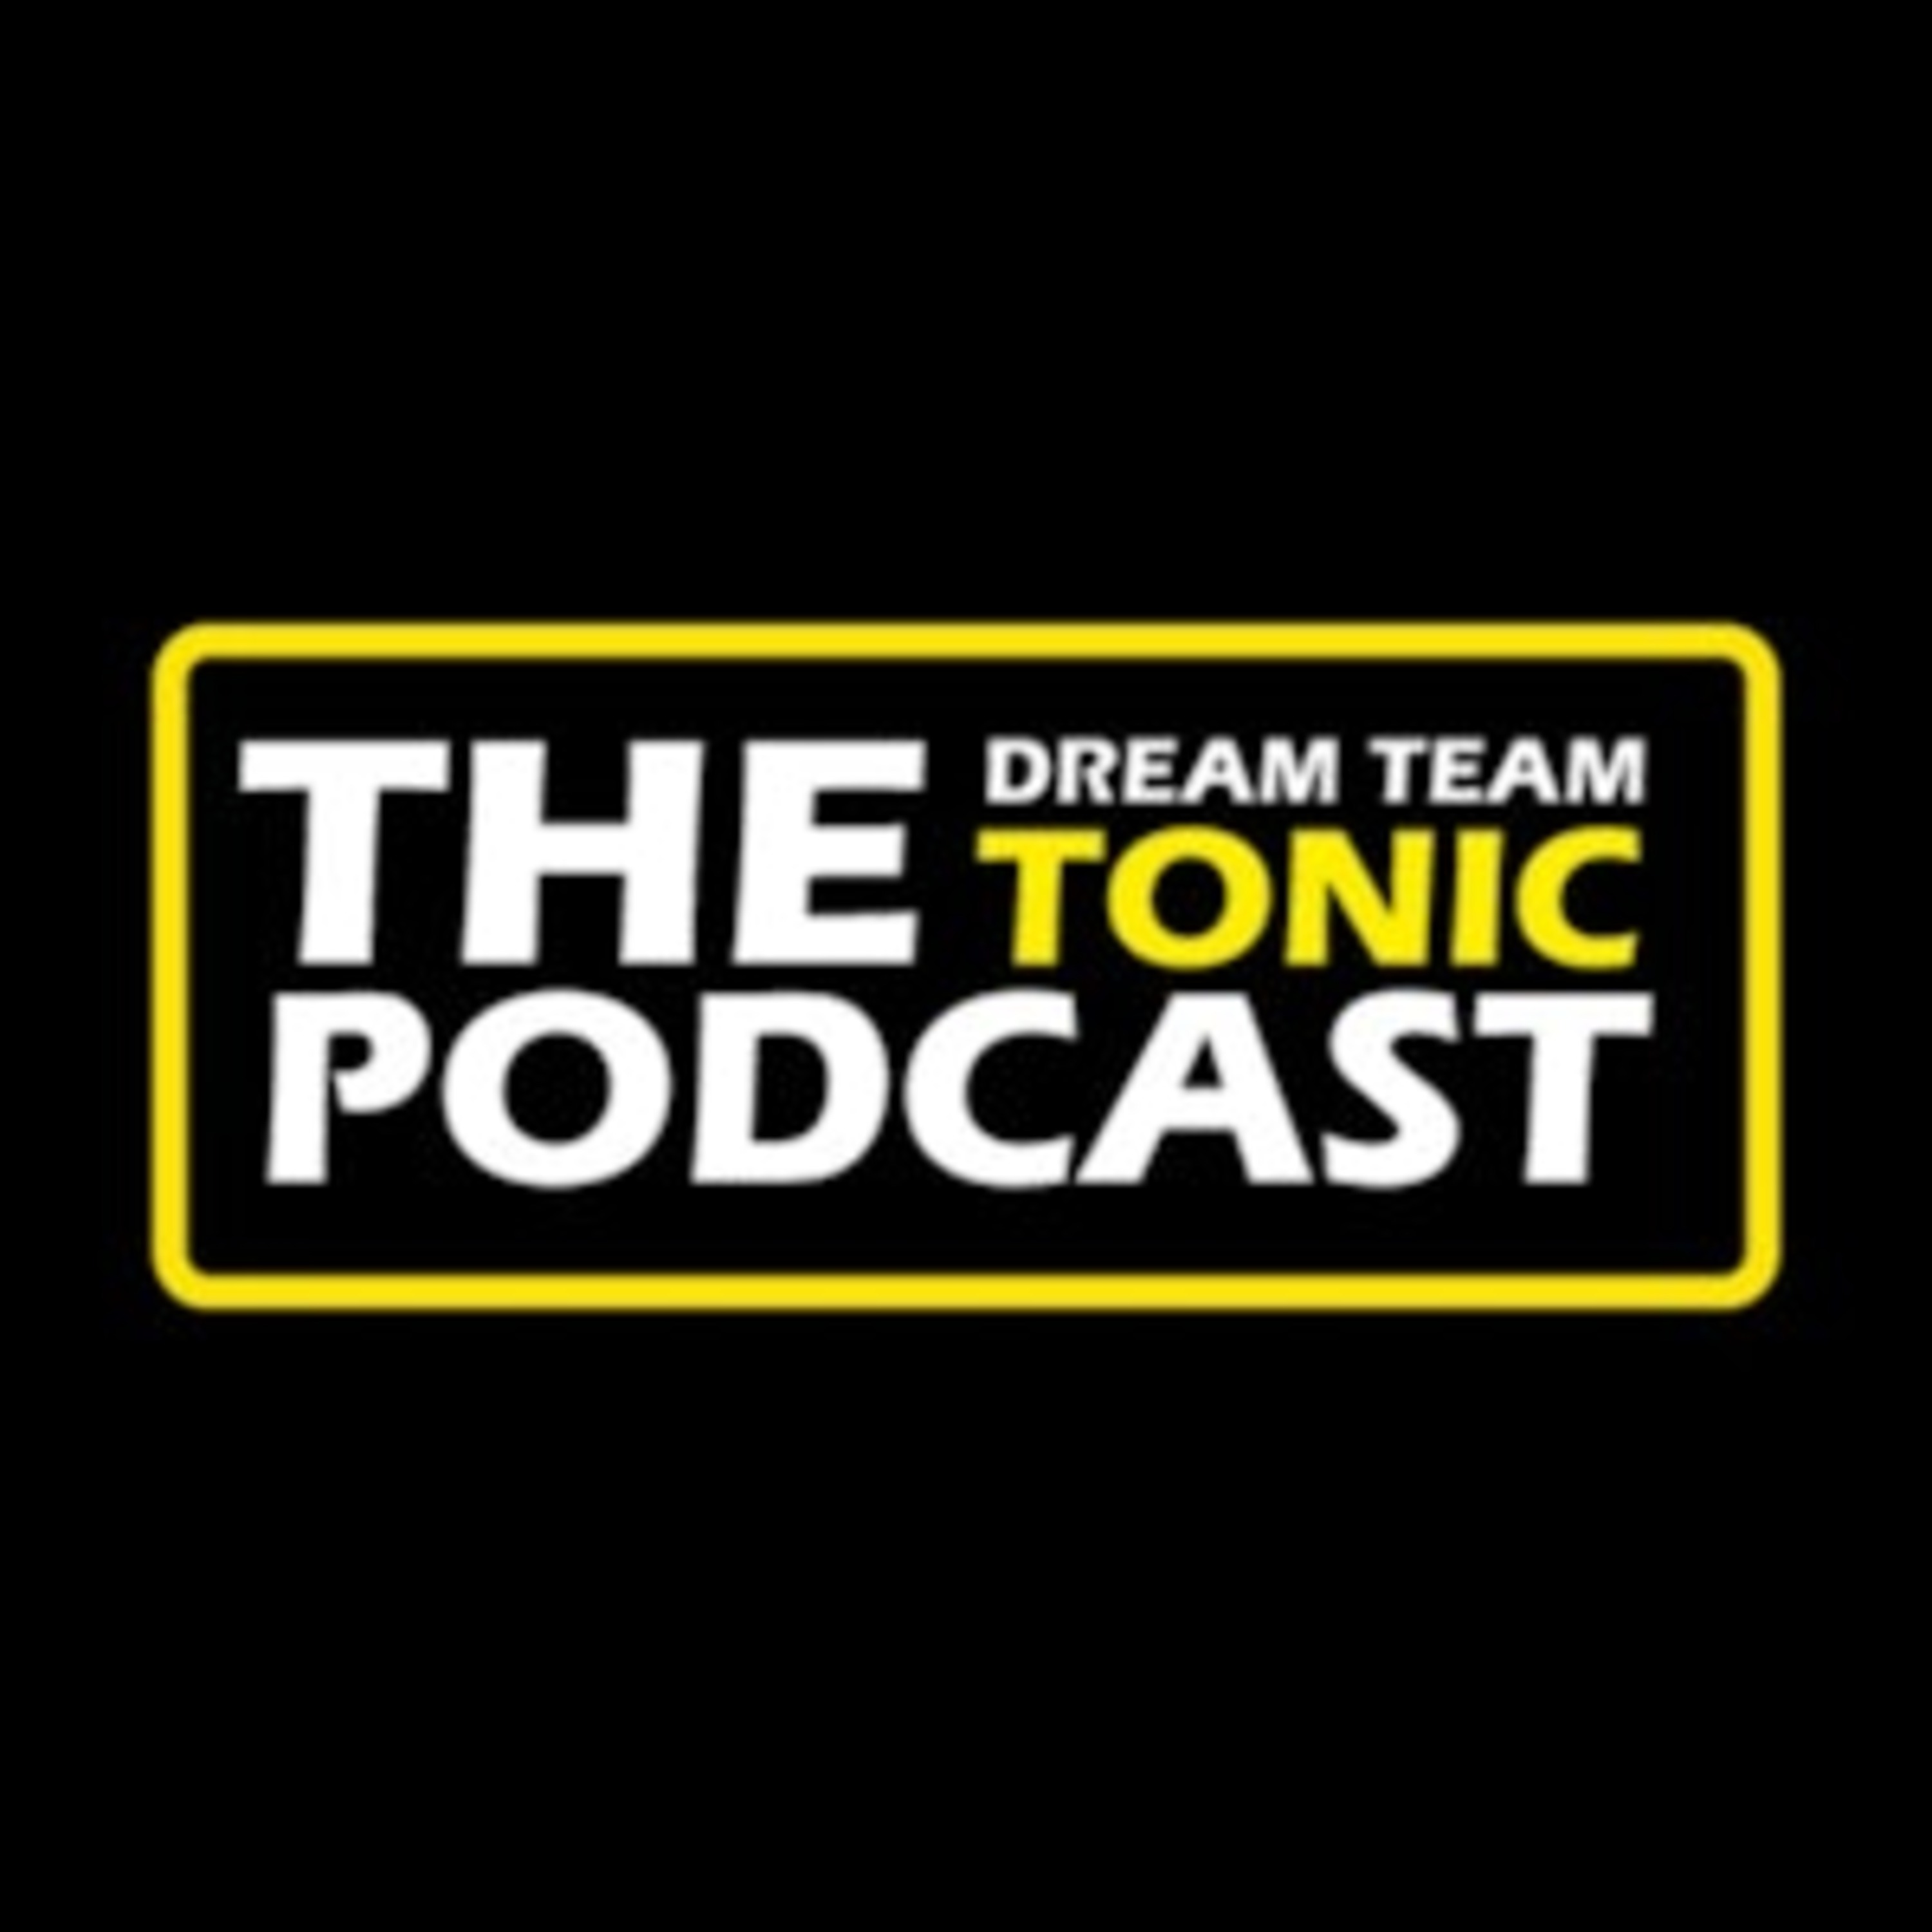 Dream Team Tonic